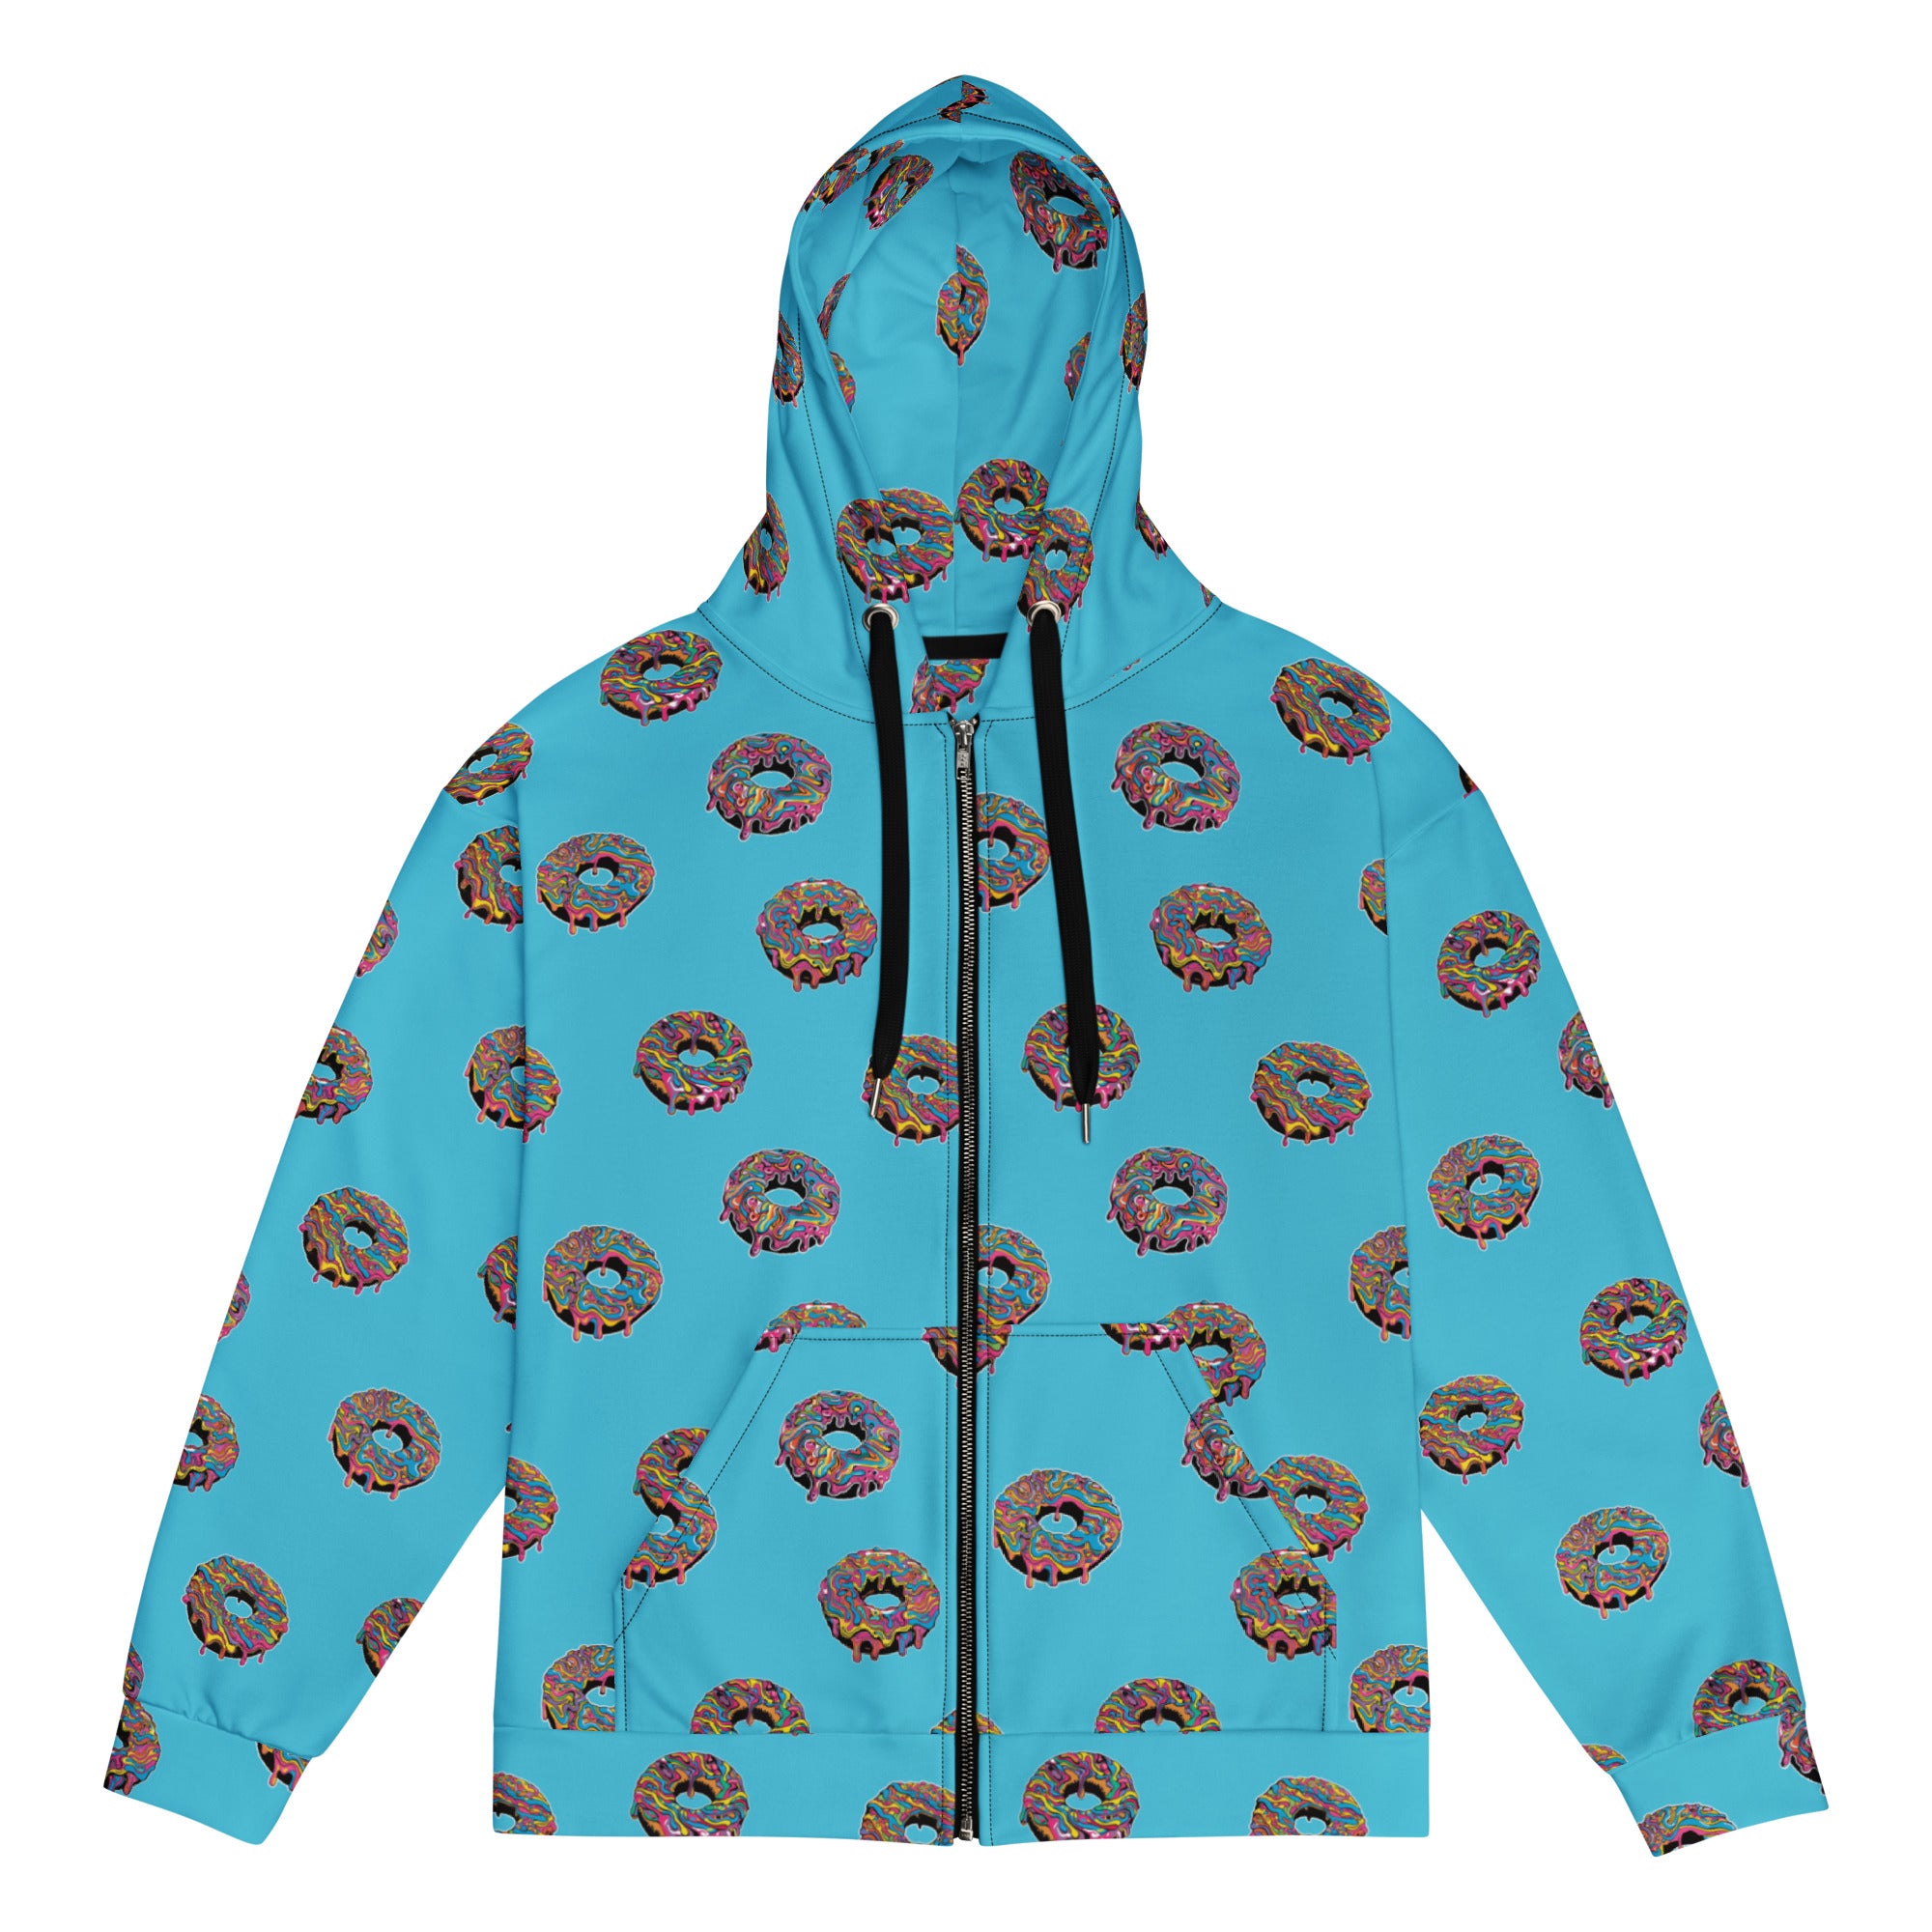 The Psychedelic Baker's Dozen Zip hoodie